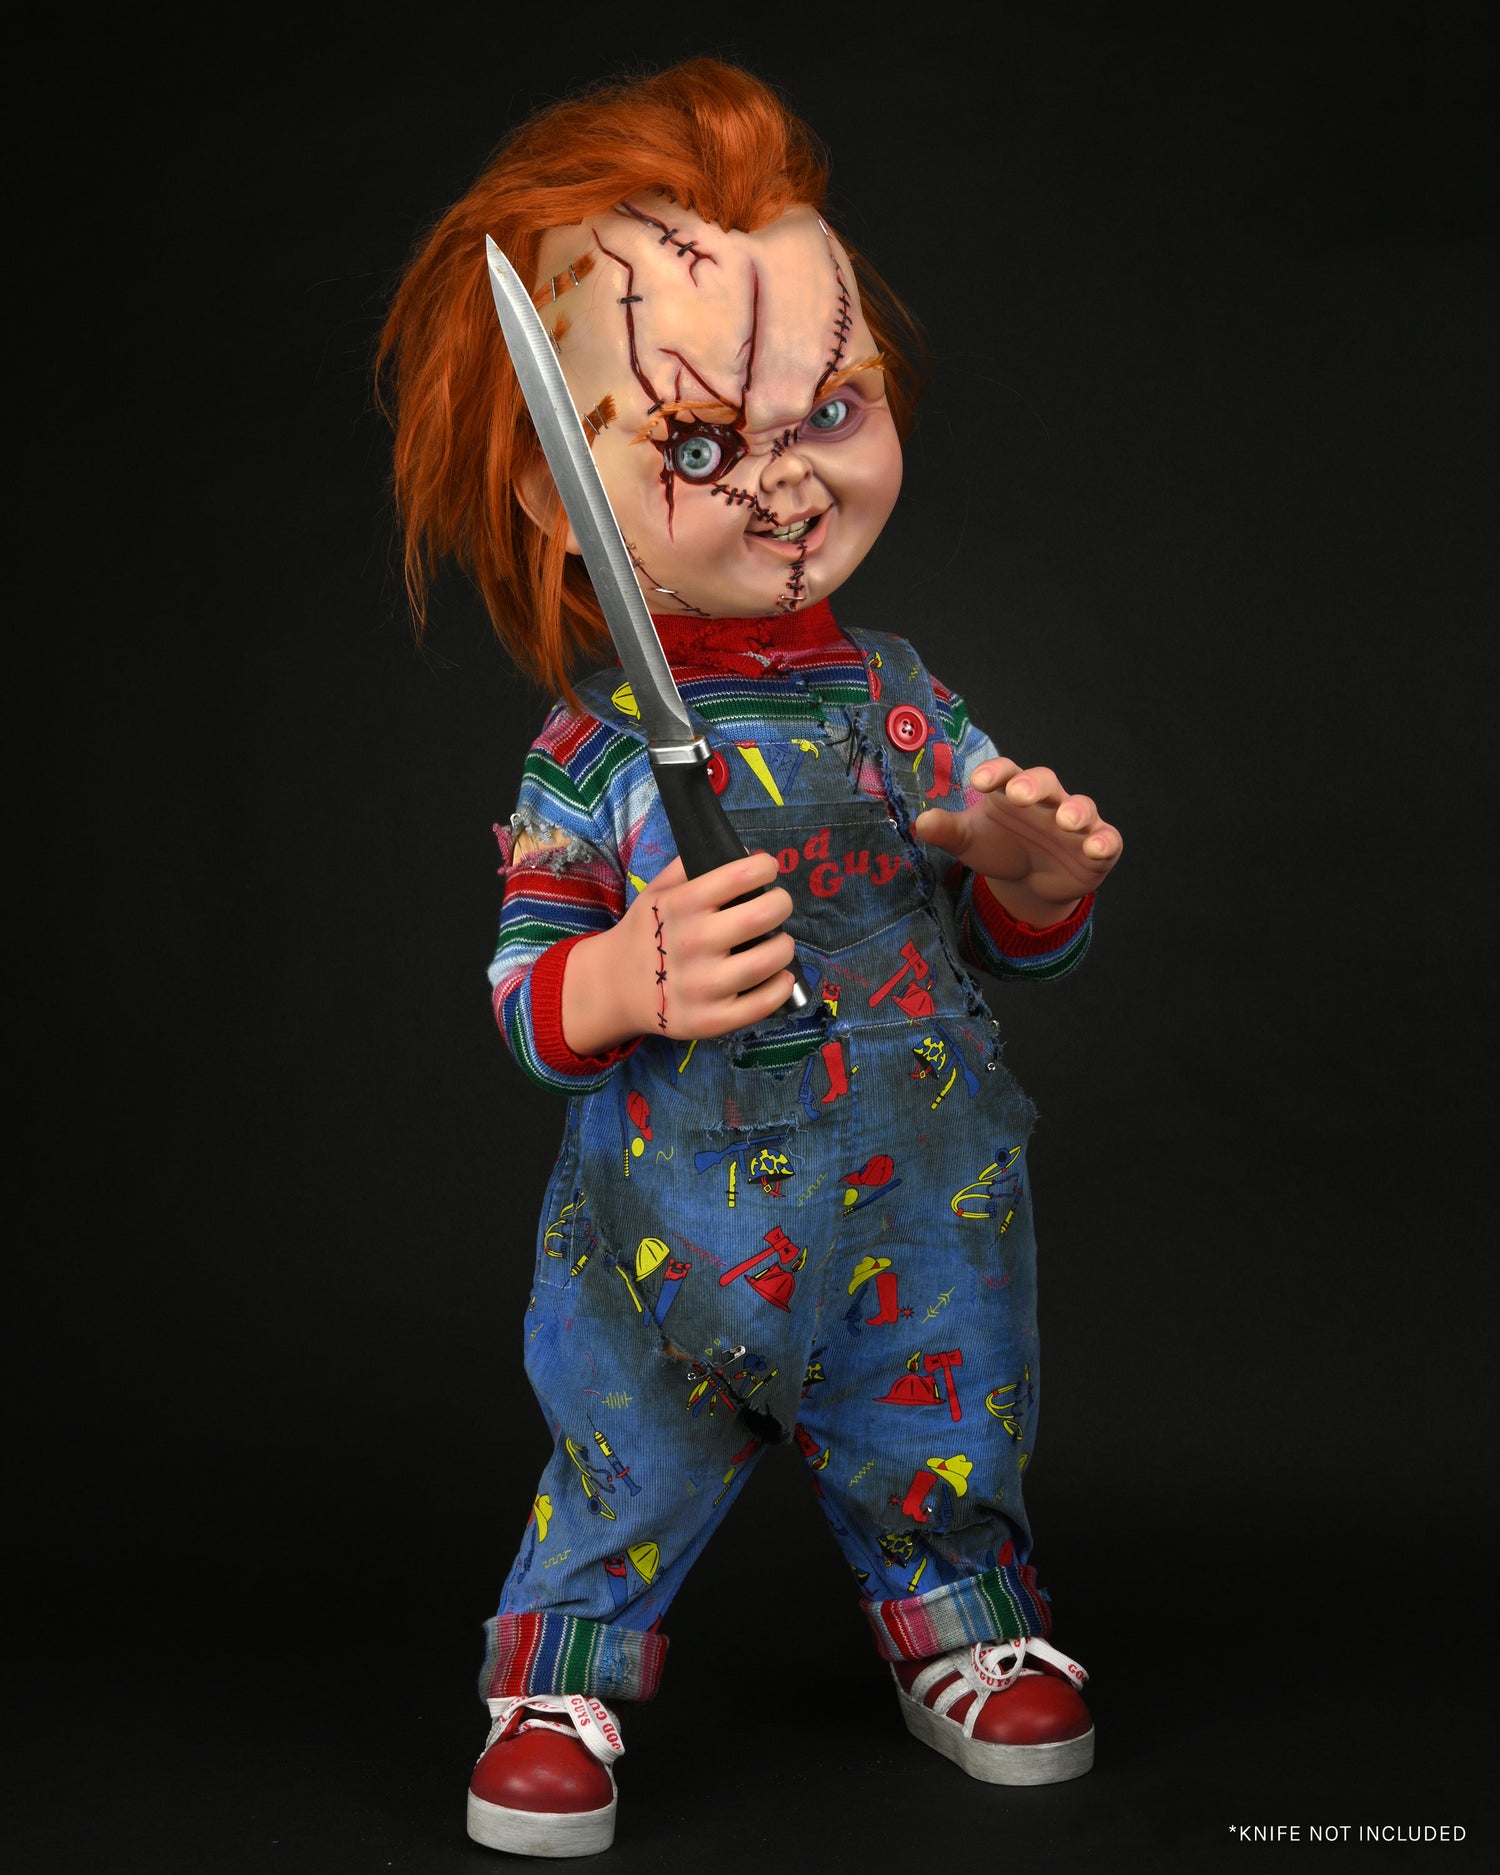 Bride of Chucky - 1:1 Replica - Life-Size Chucky (PRE-ORDER) – NECA